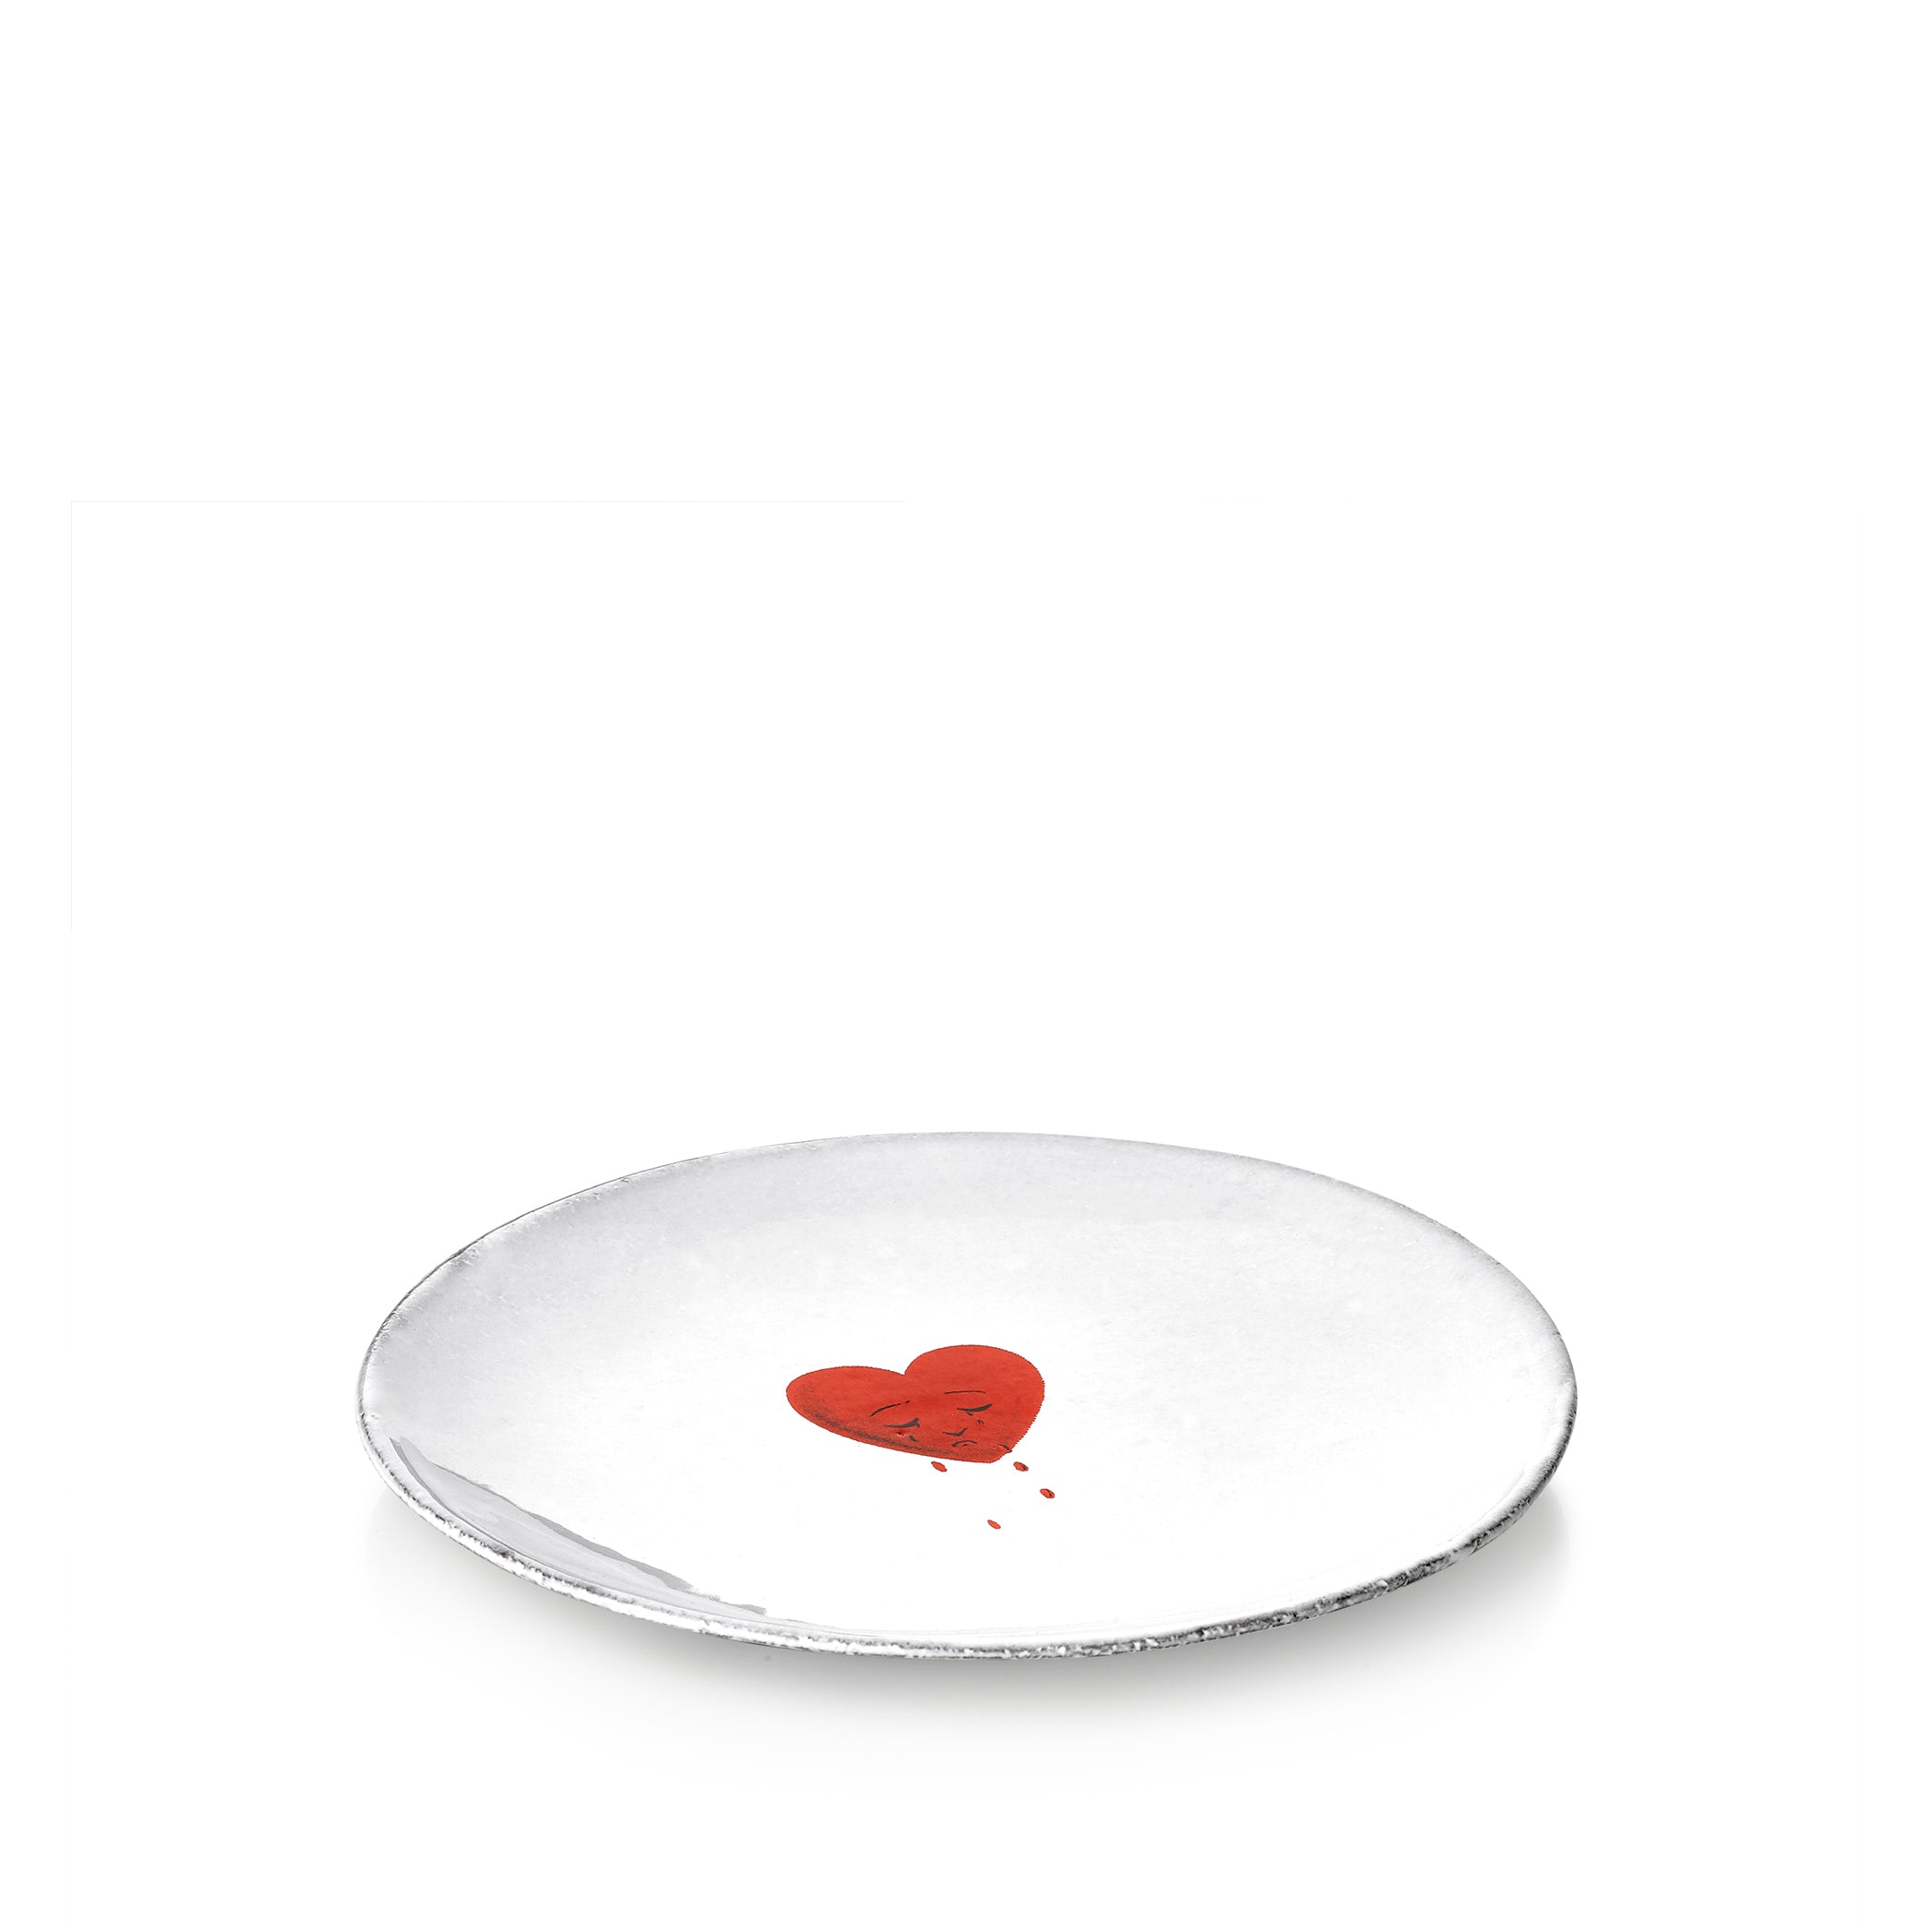 Crying Heart Saucer by Astier de Villatte, 15.5cm